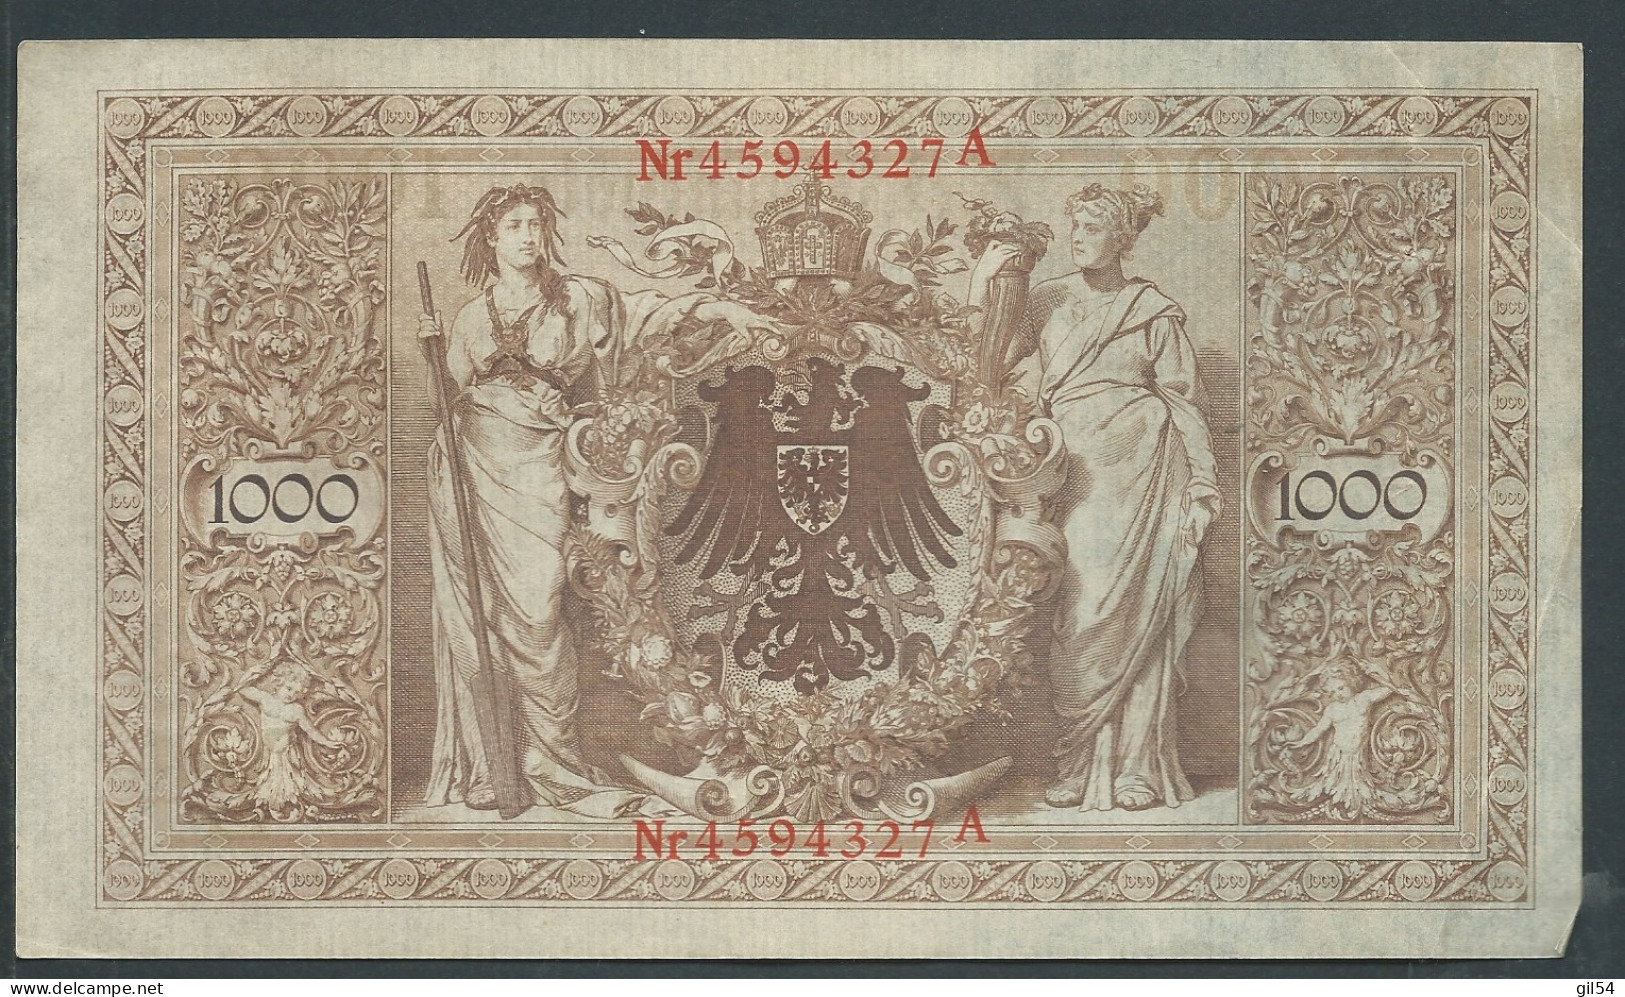 21 Avril 1910 - Billet 1000 Mark - Allemagne , - Nr 4594327 A - Laura 10612 - 1000 Mark